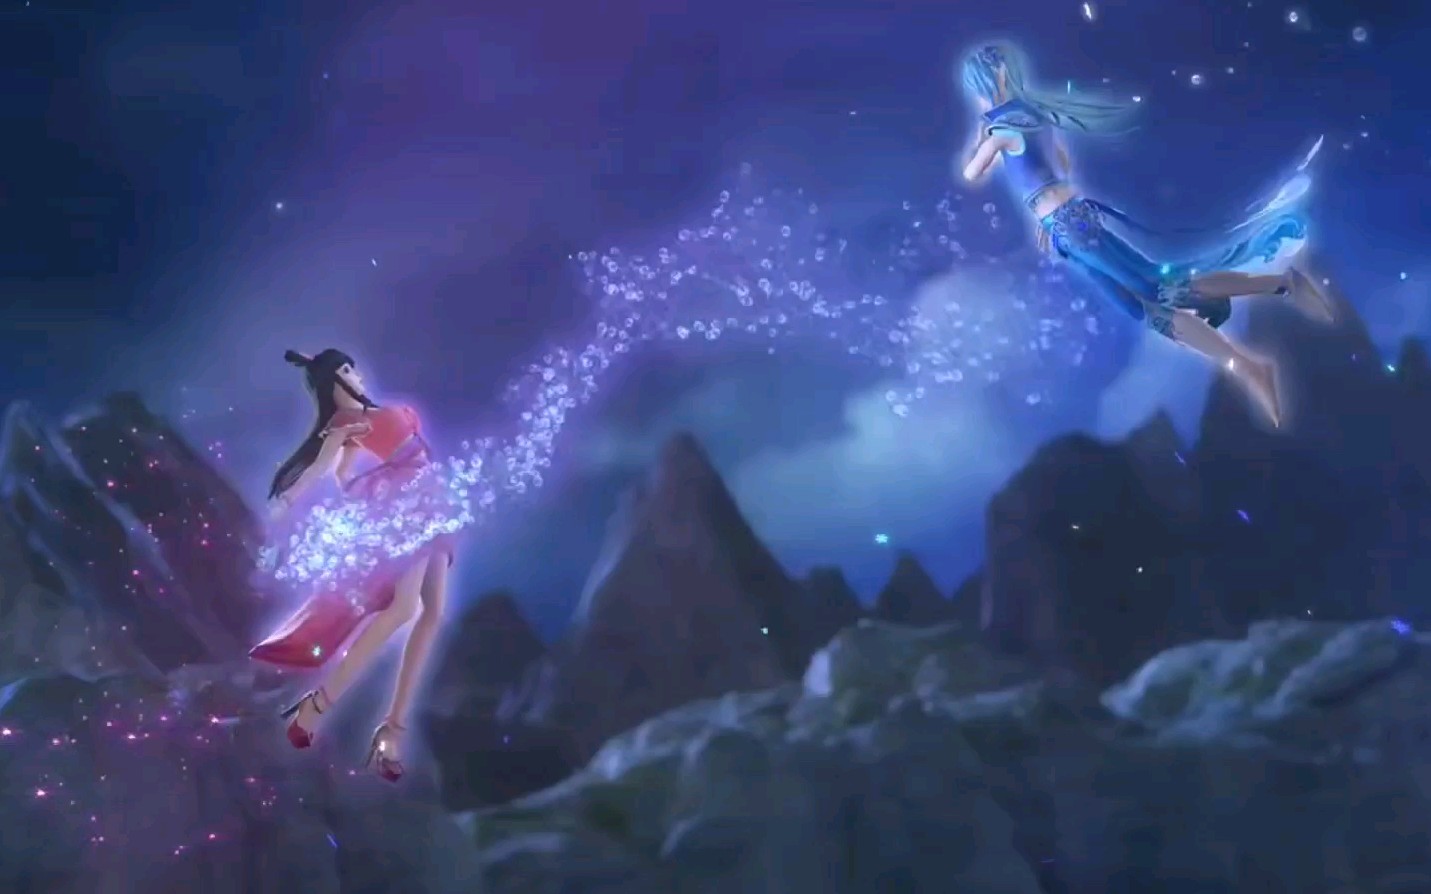 【叶罗丽精灵梦】第六季 王默跟水王子回仙境,有可能复活辛灵仙子